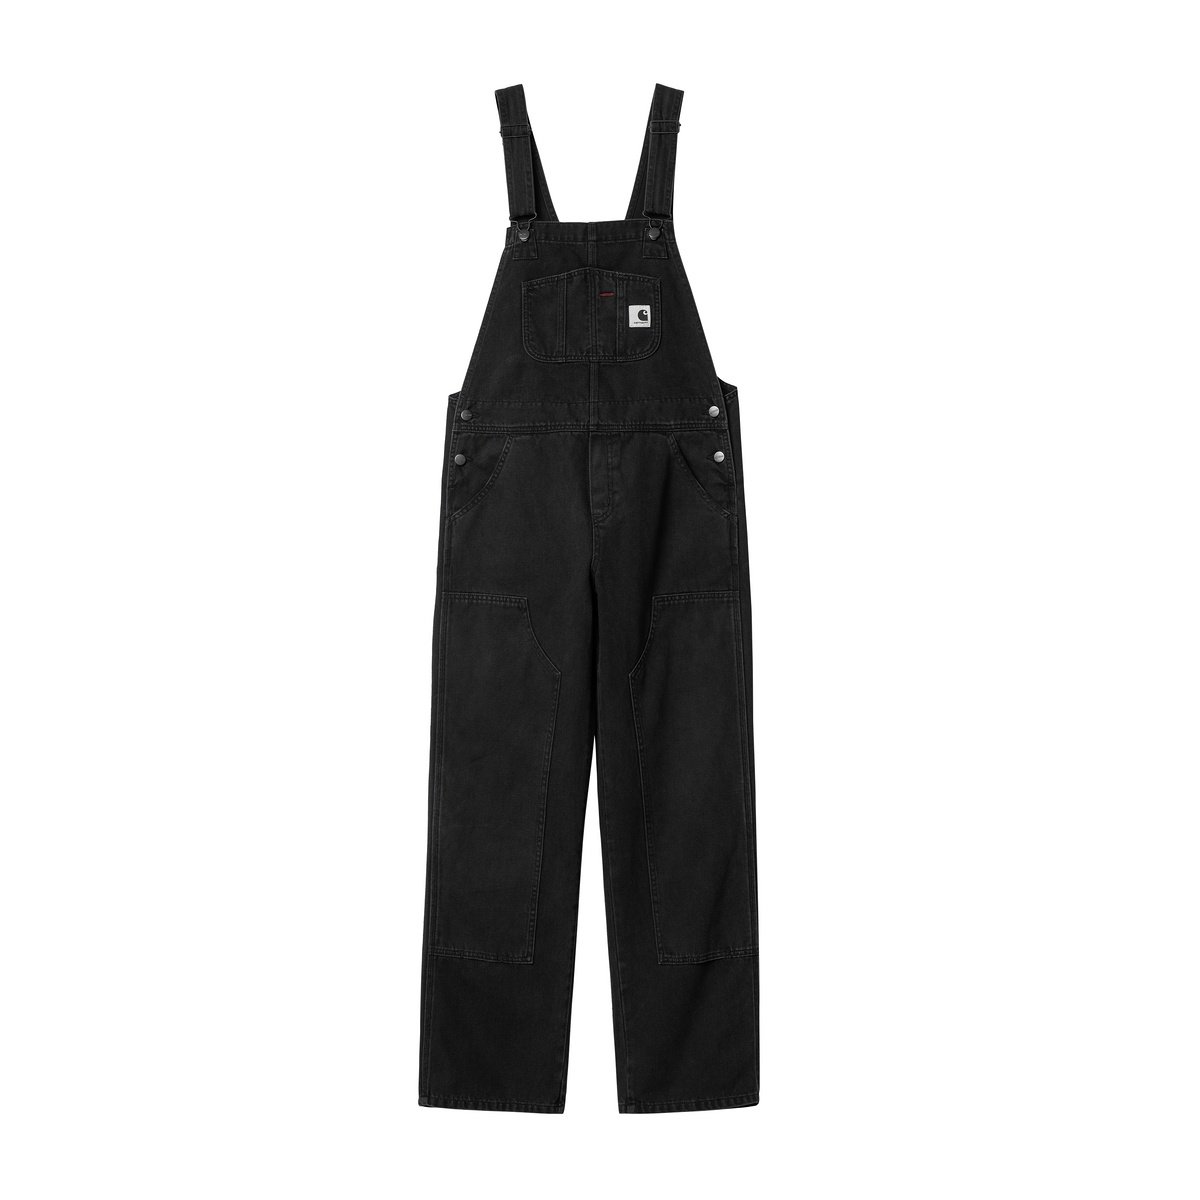 Dickies 874 cropped work trousers in black